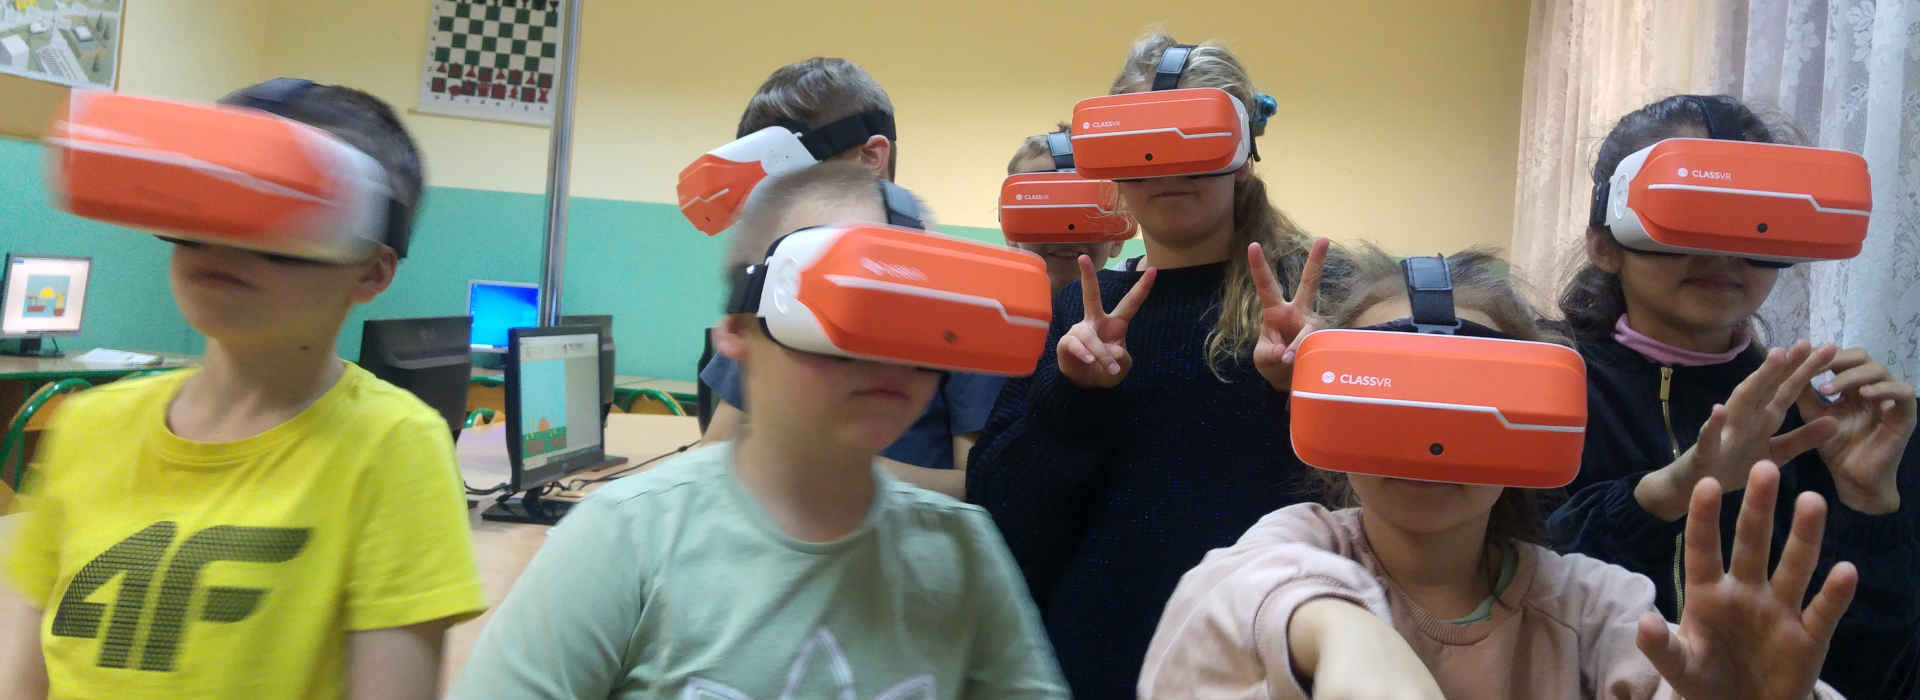 Uczniowie w okularach VR